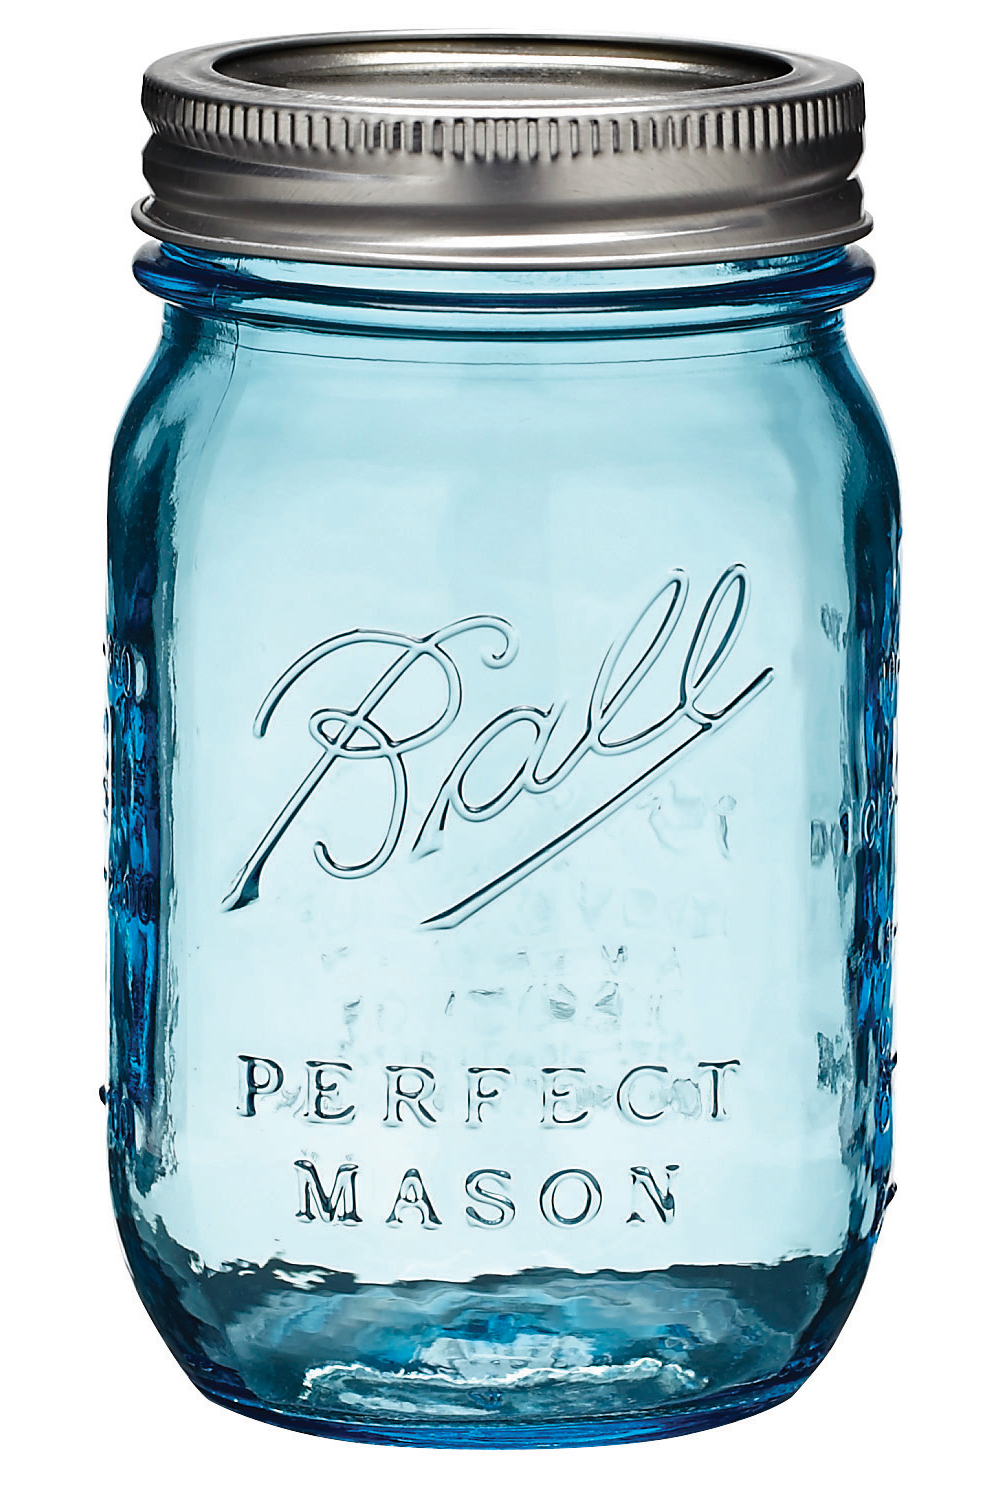 P Ball Mason Jar X | Free Images at Clipart library - vector clip art 